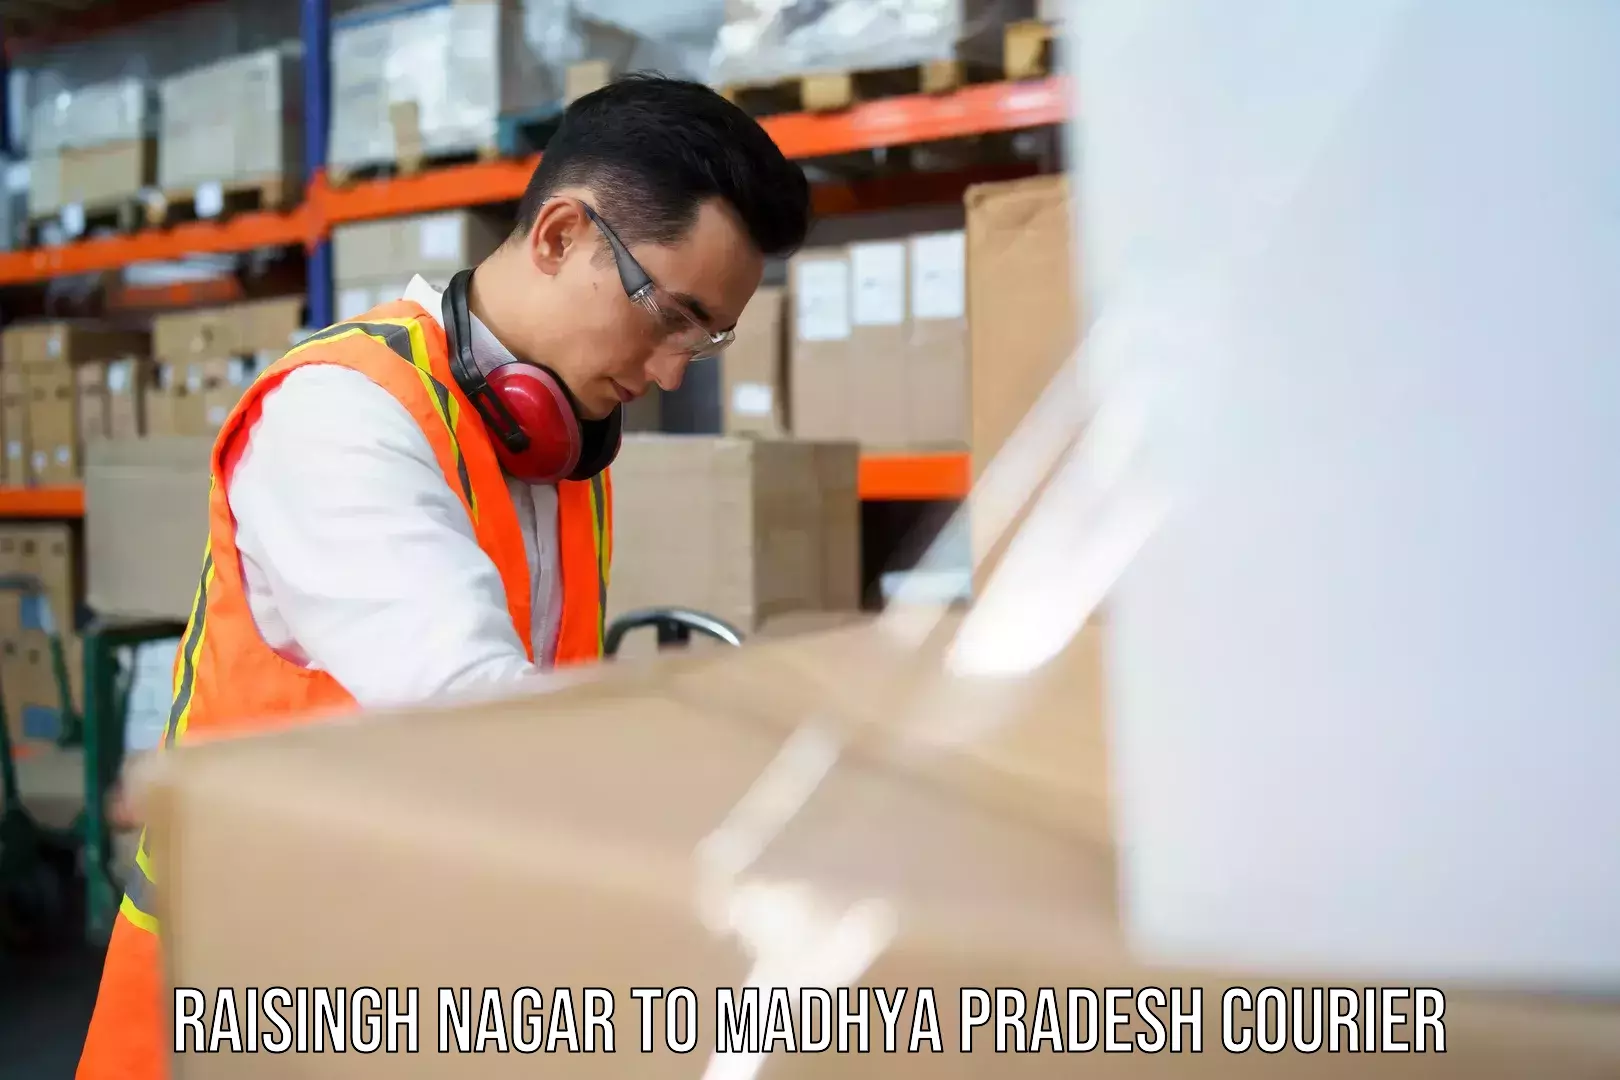 Comprehensive logistics Raisingh Nagar to Nagod